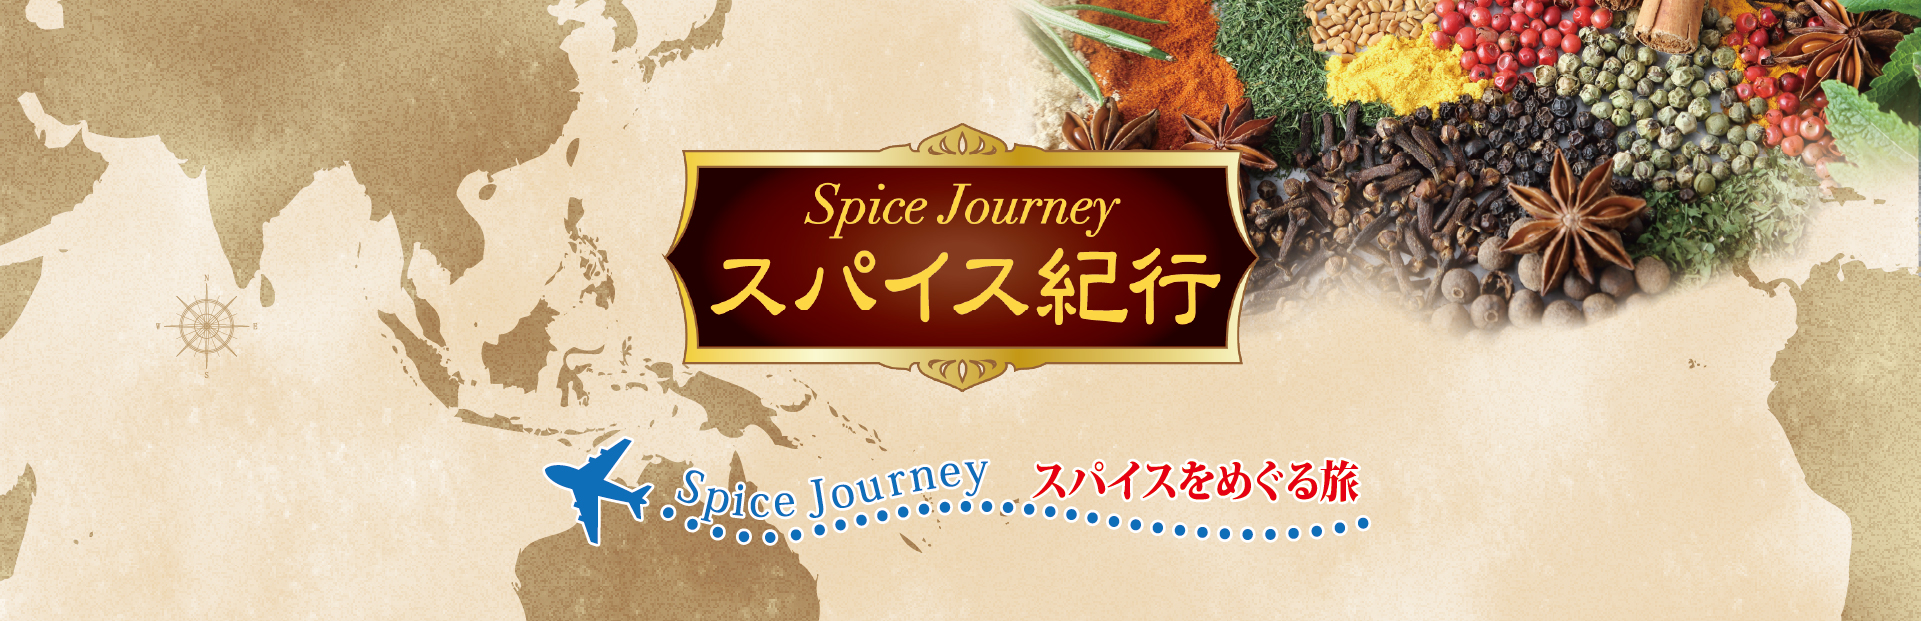 新発売 スパイス紀行 Spice Journey | spice Journey スパイスをめぐる旅